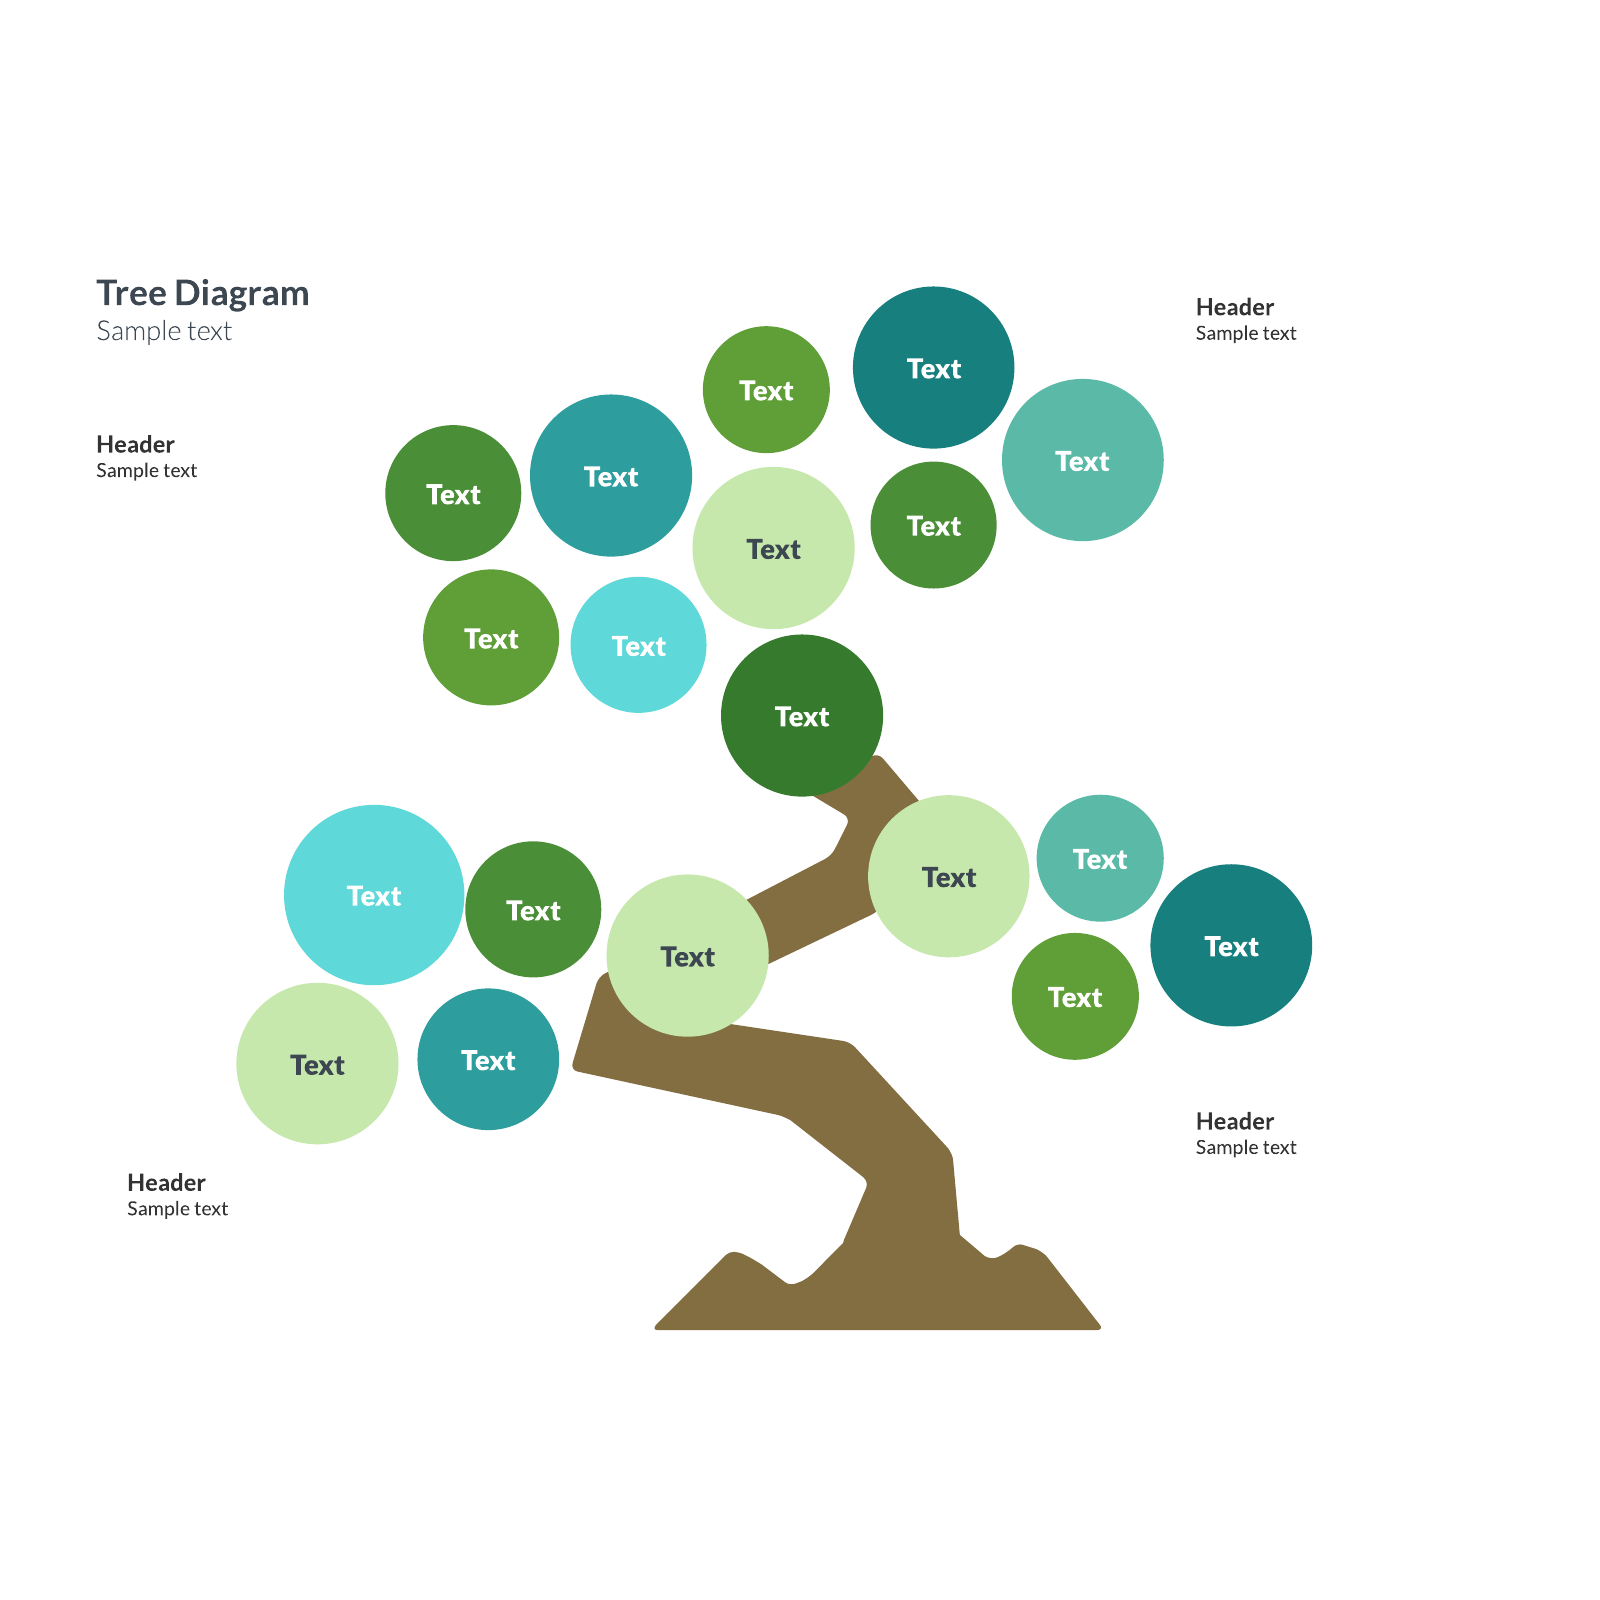 Tree Diagram example